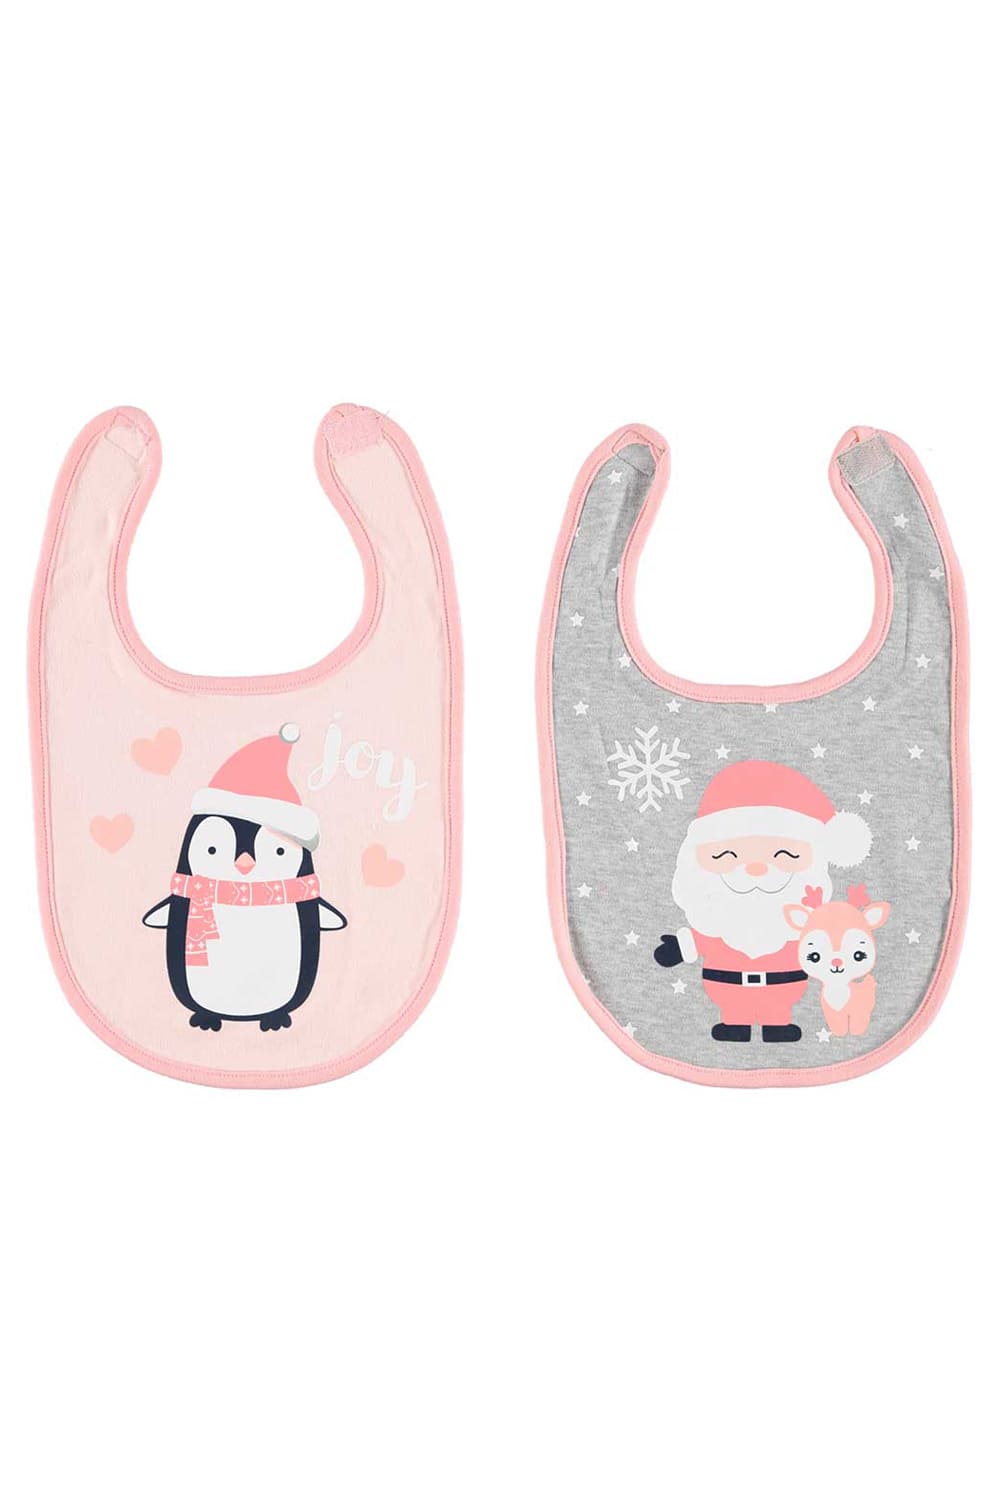 Babylatz mit Pinguin, Textilfarbe ist in rosa & 1x Babylatz mit Weihnachtsmann, Textilfarbe ist in rosa und grau.